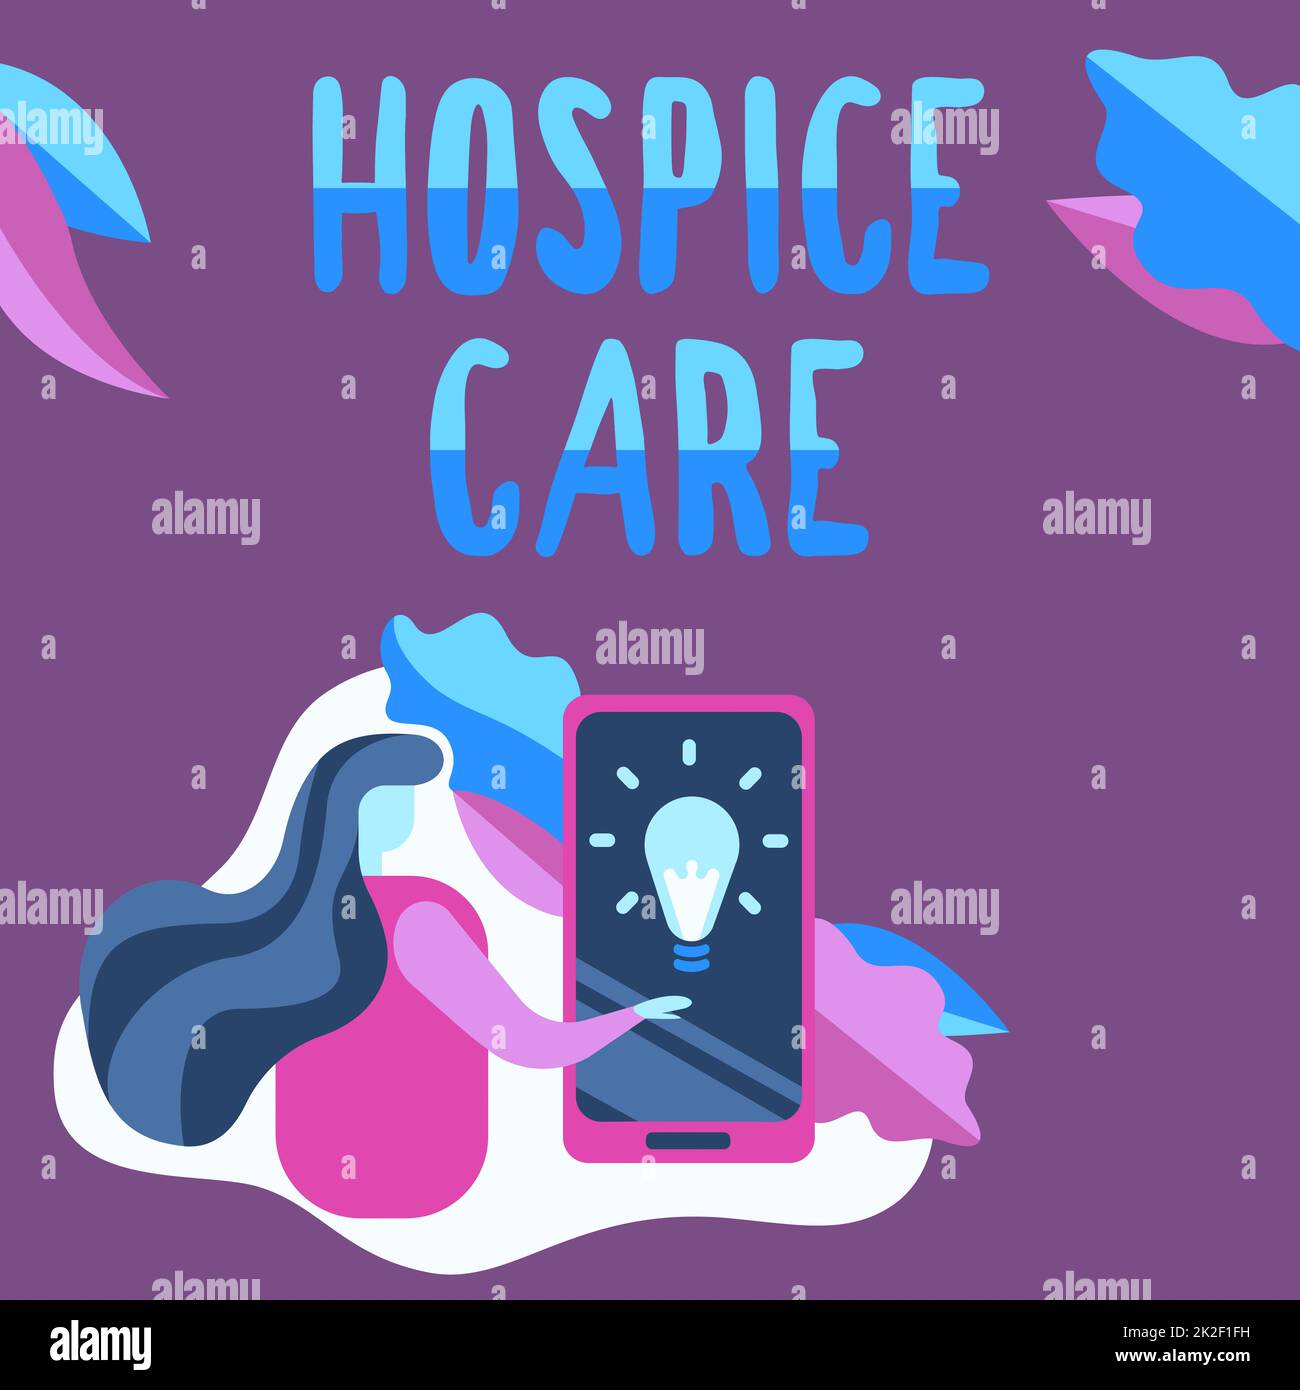 Textzeichen für Hospice Care. Der Schwerpunkt liegt auf der Palliation einer chronisch kranken Frau, die auf dem Bildschirm des Mobiltelefons die futuristische Technologie zeigt. Stockfoto